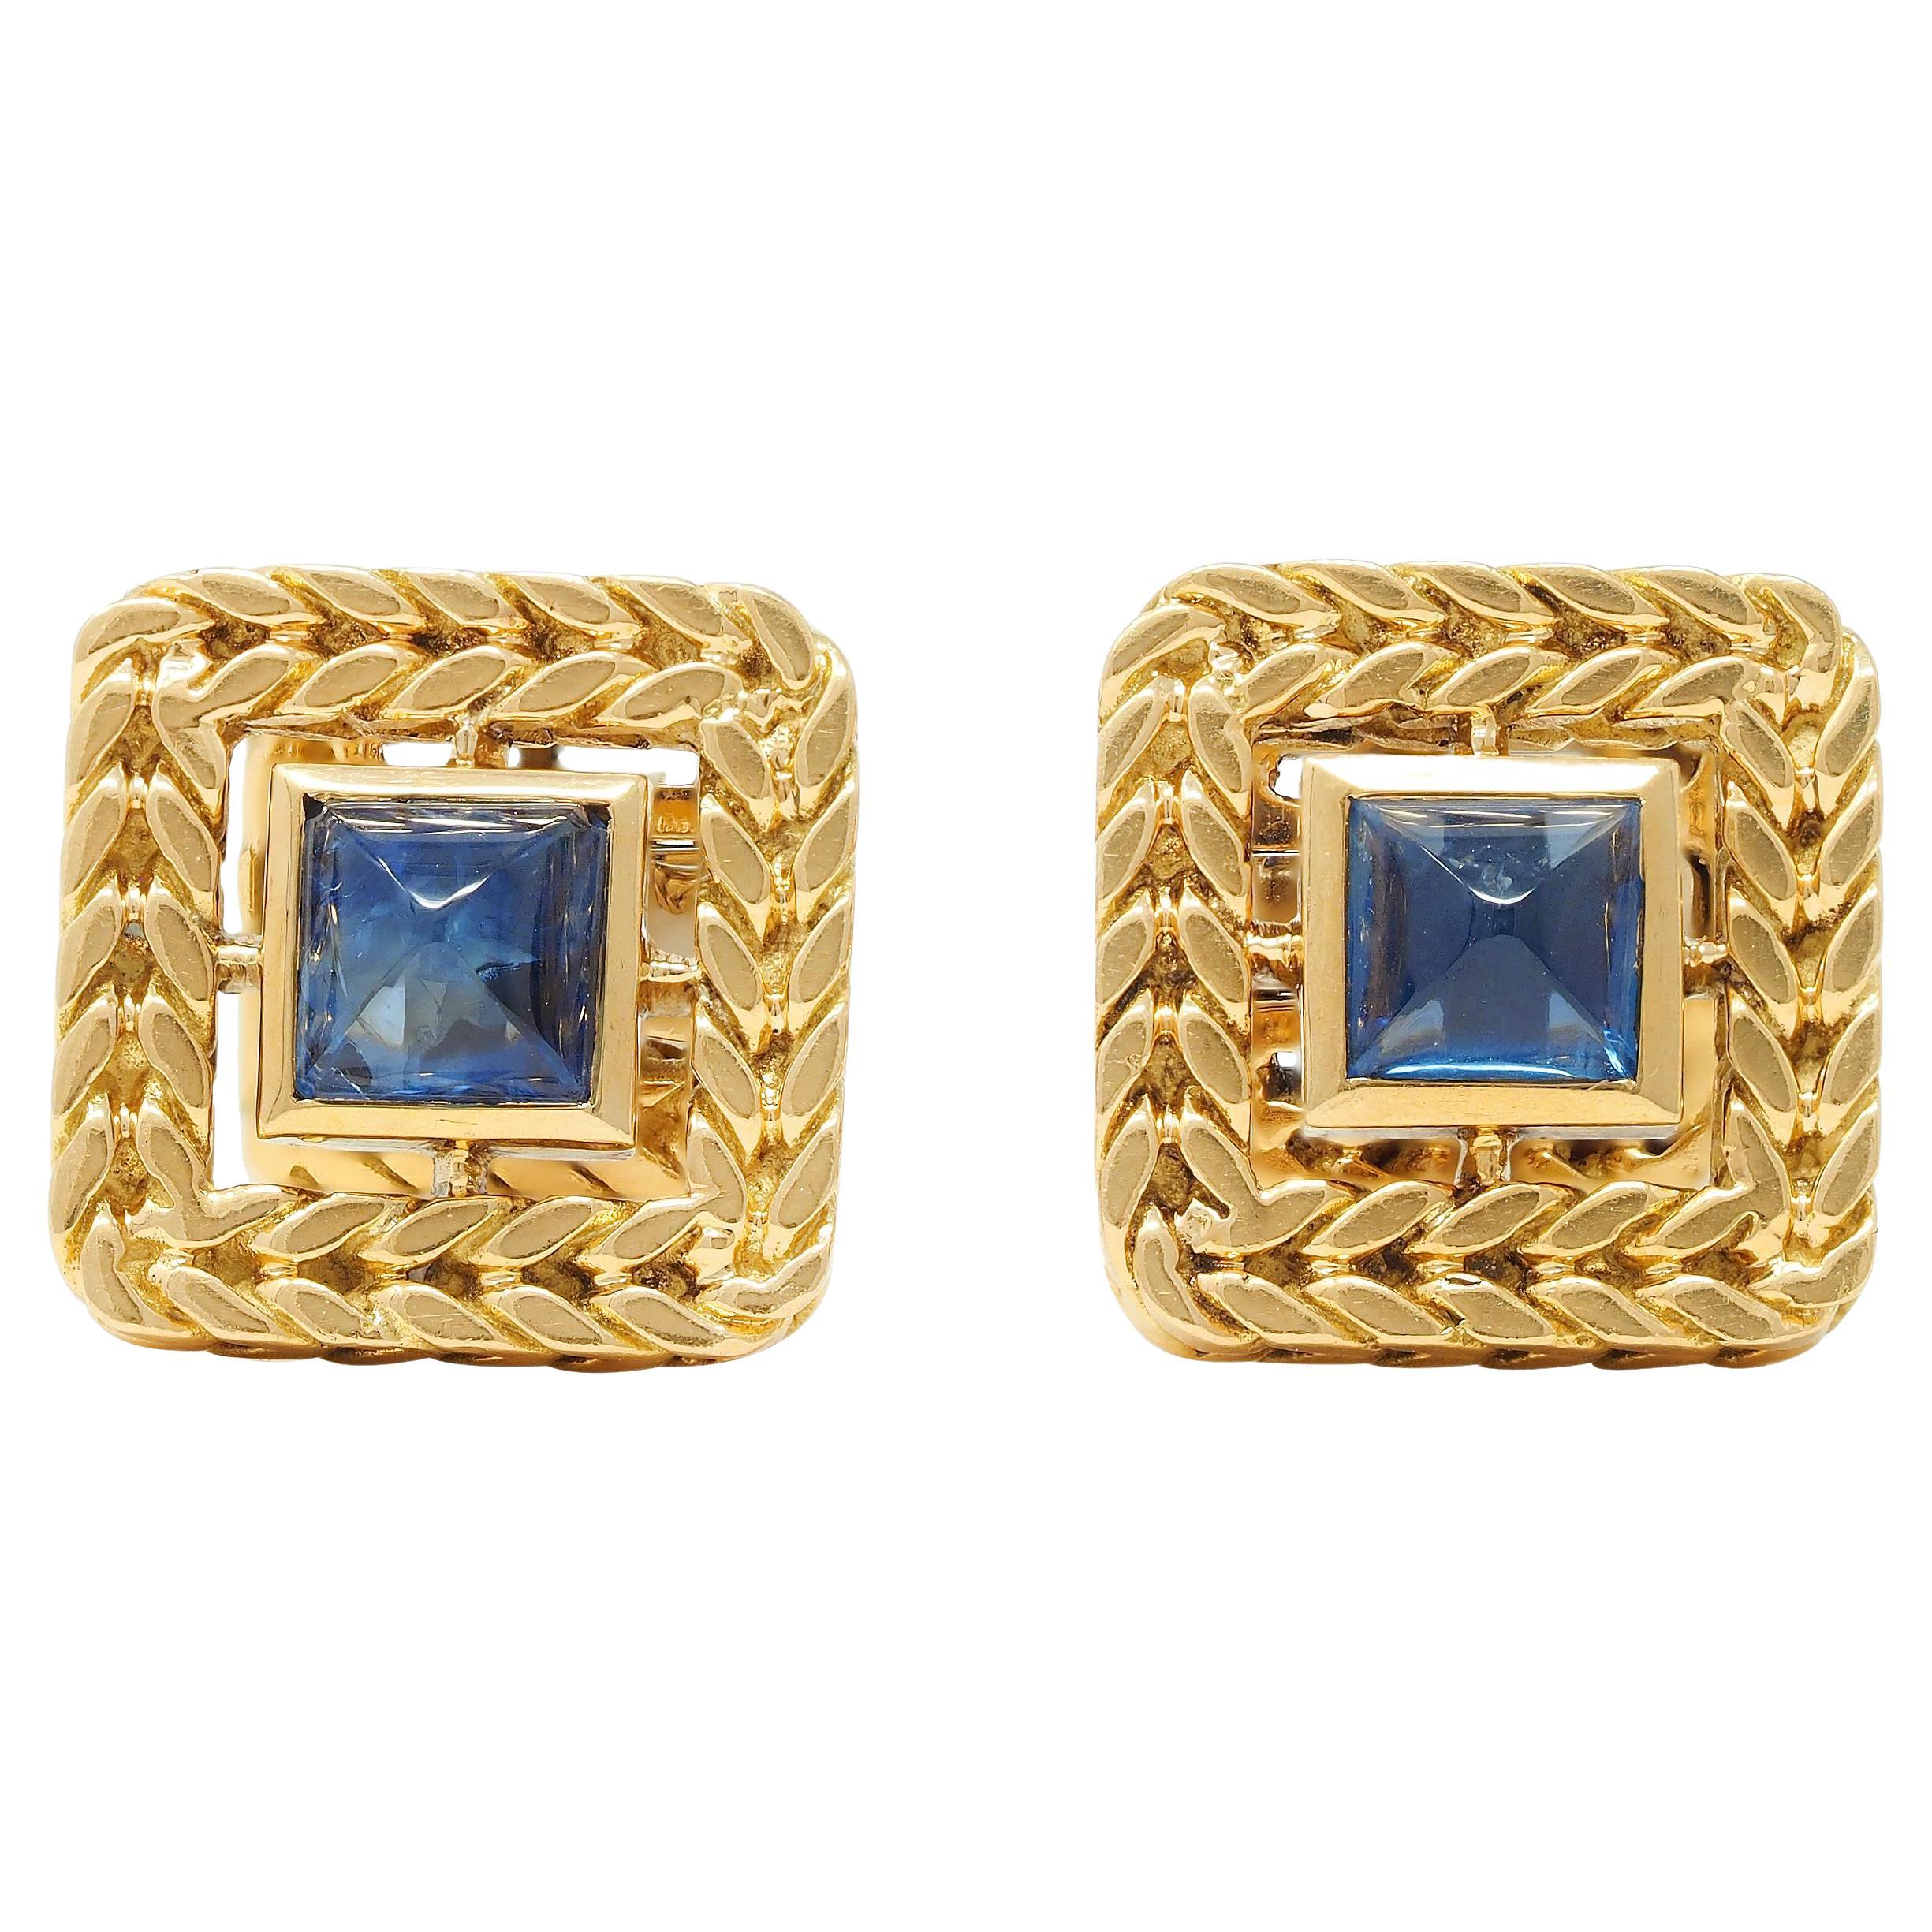 Van Cleef & Arpels Gorges L'Enfant France Sapphire 18 Karat Gold Braid Cufflinks